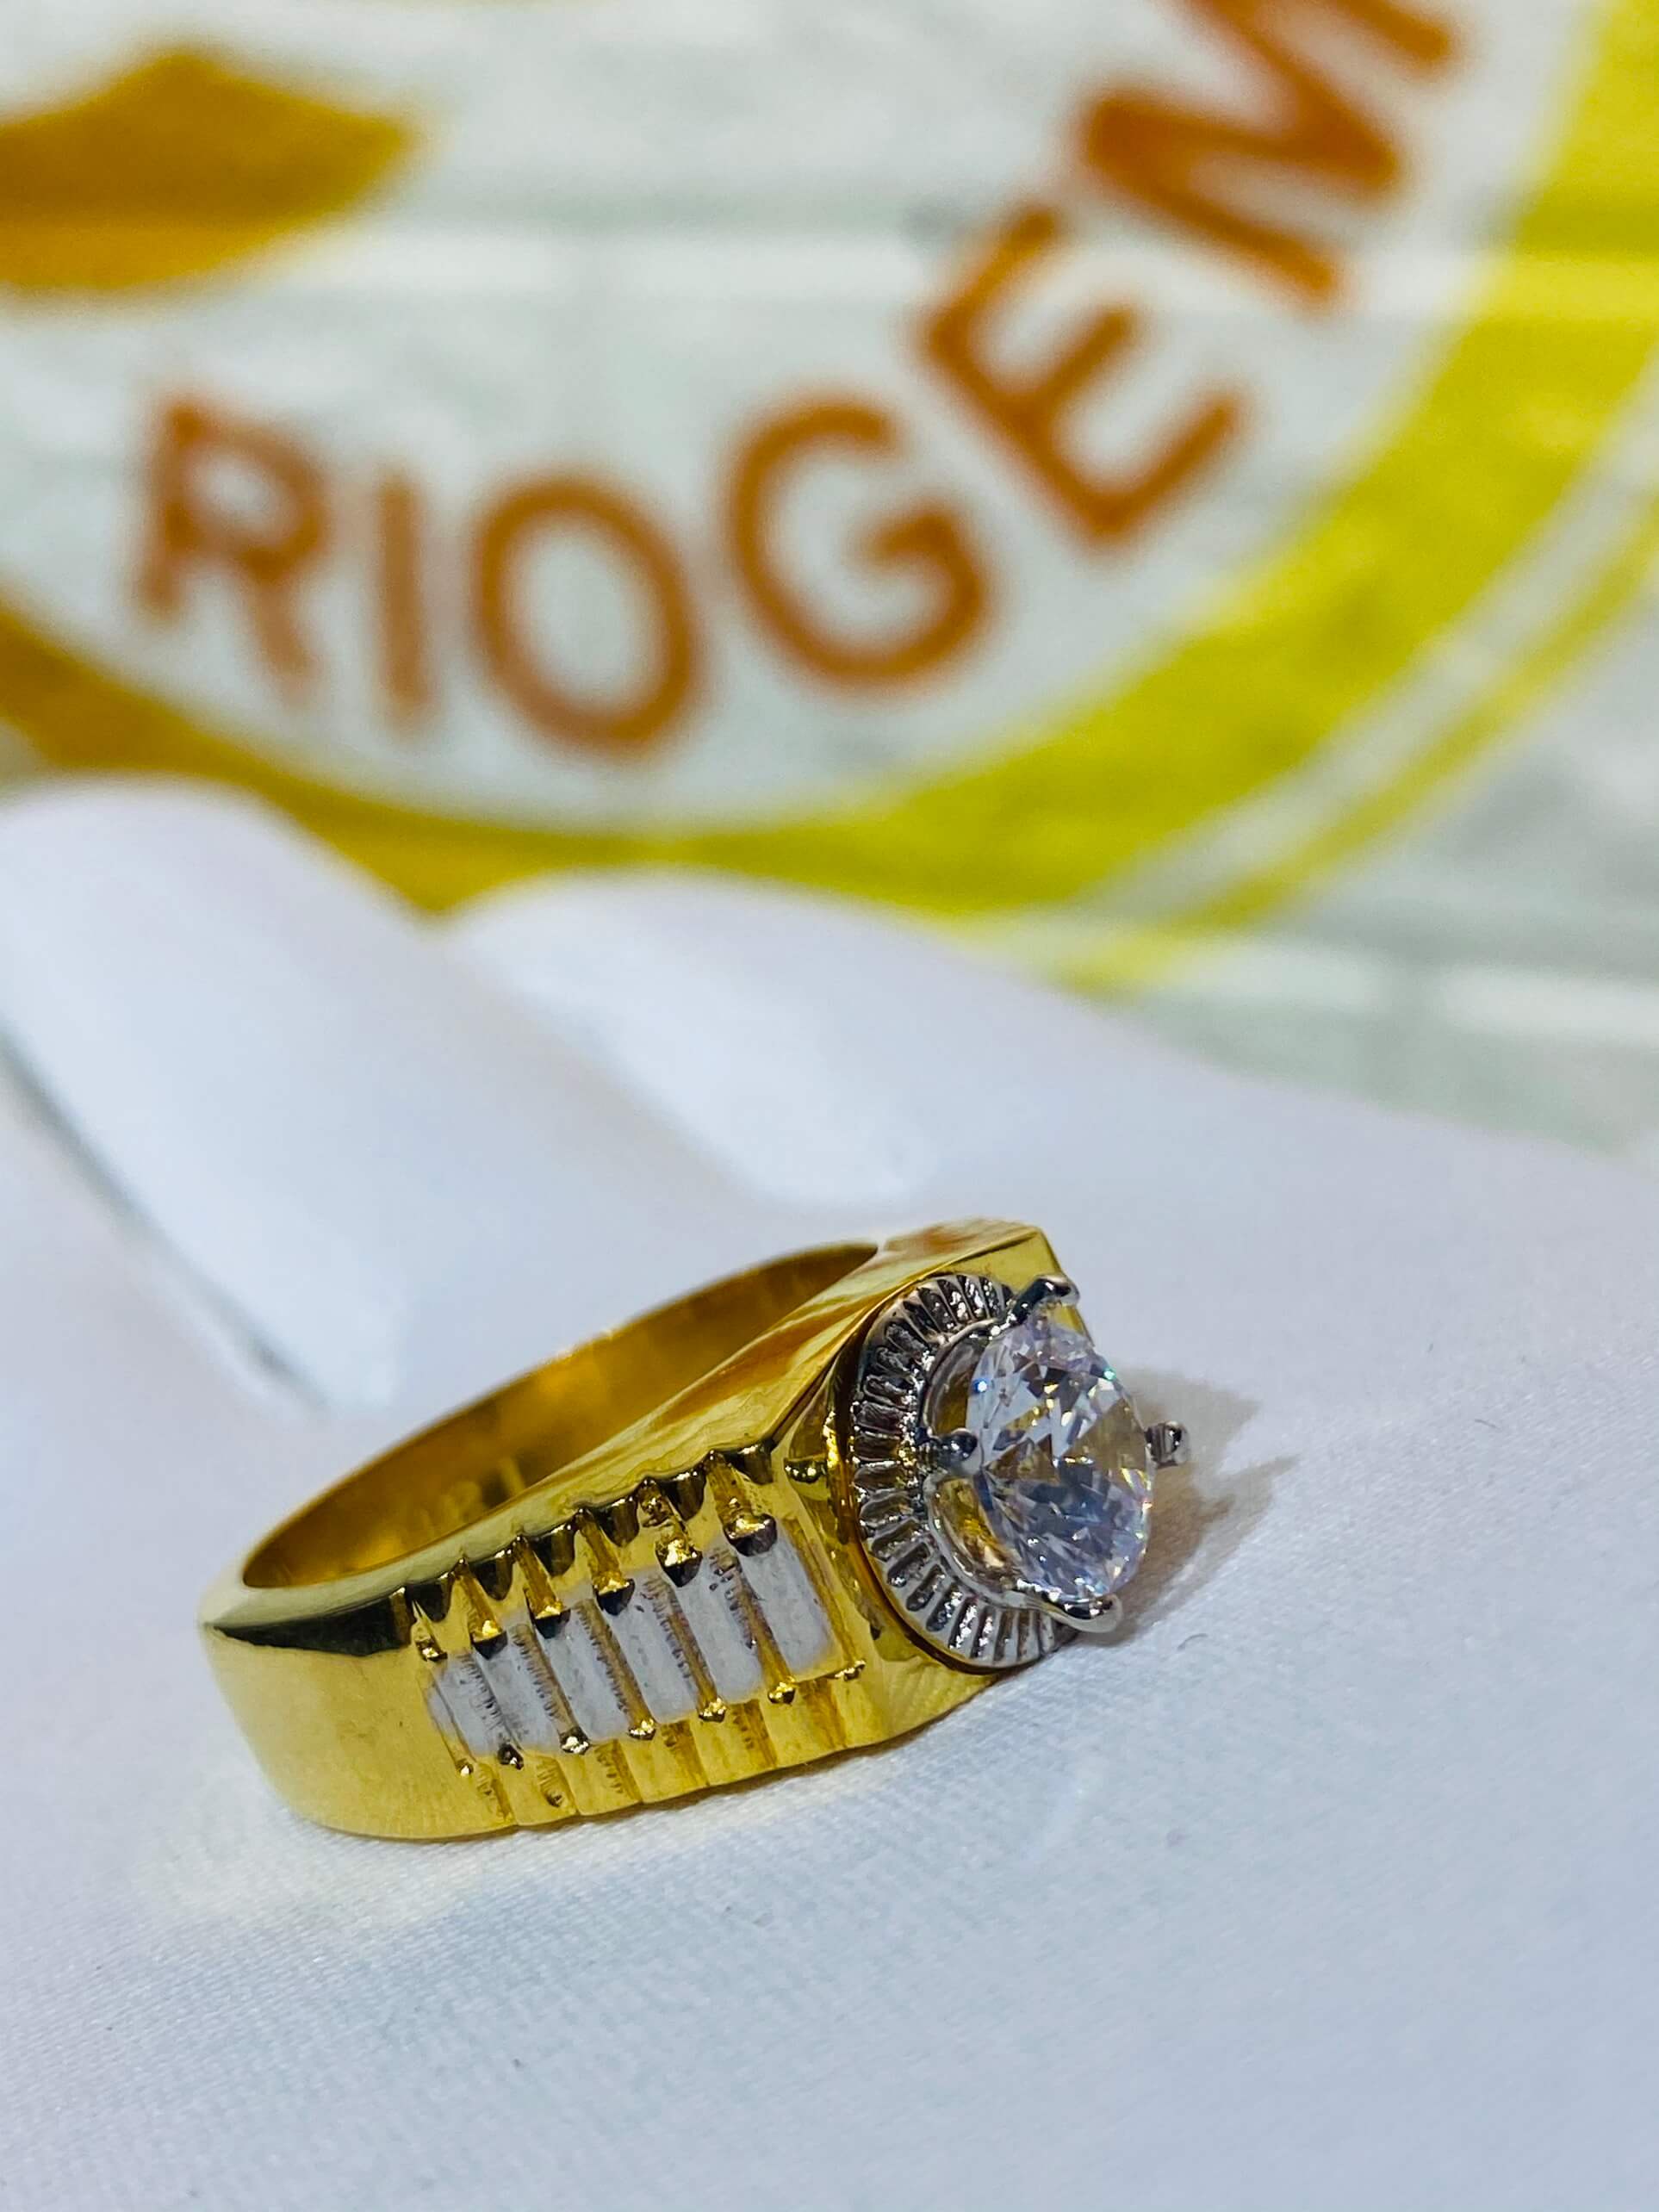 Nhẫn nam Rolex đính đá Zc phong thủy, mang lại may mắn cho người đeo, phù hợp mệnh KIM – THỦY